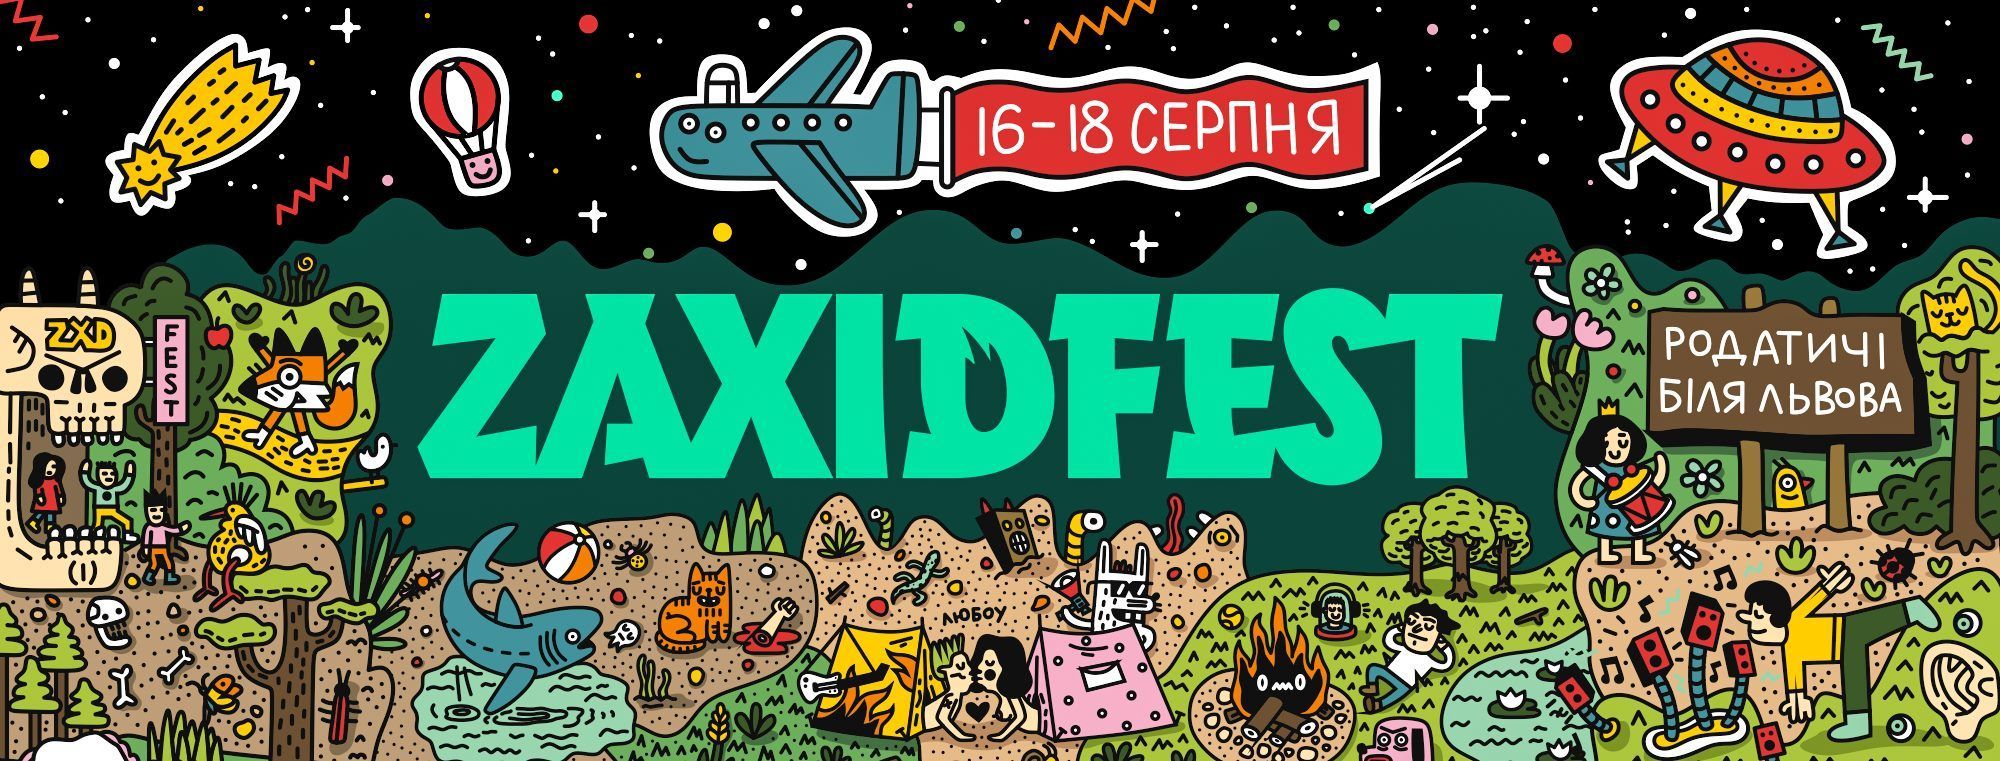 Zaxidfest-2019: назвали перших хедлайнерів